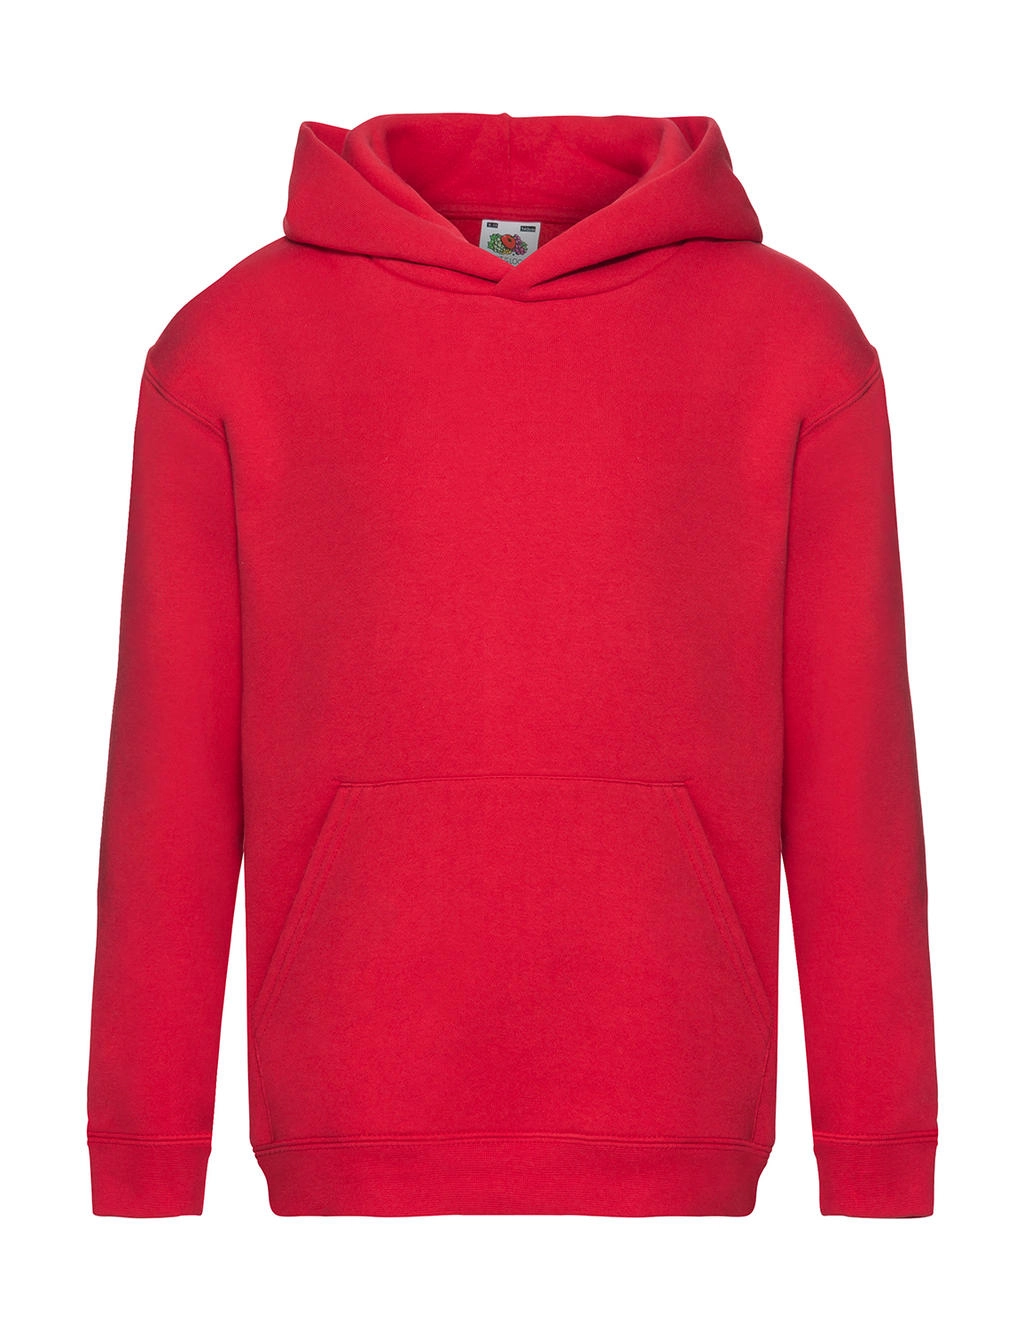 Kids` Premium Hooded Sweat zum Besticken und Bedrucken in der Farbe Red mit Ihren Logo, Schriftzug oder Motiv.